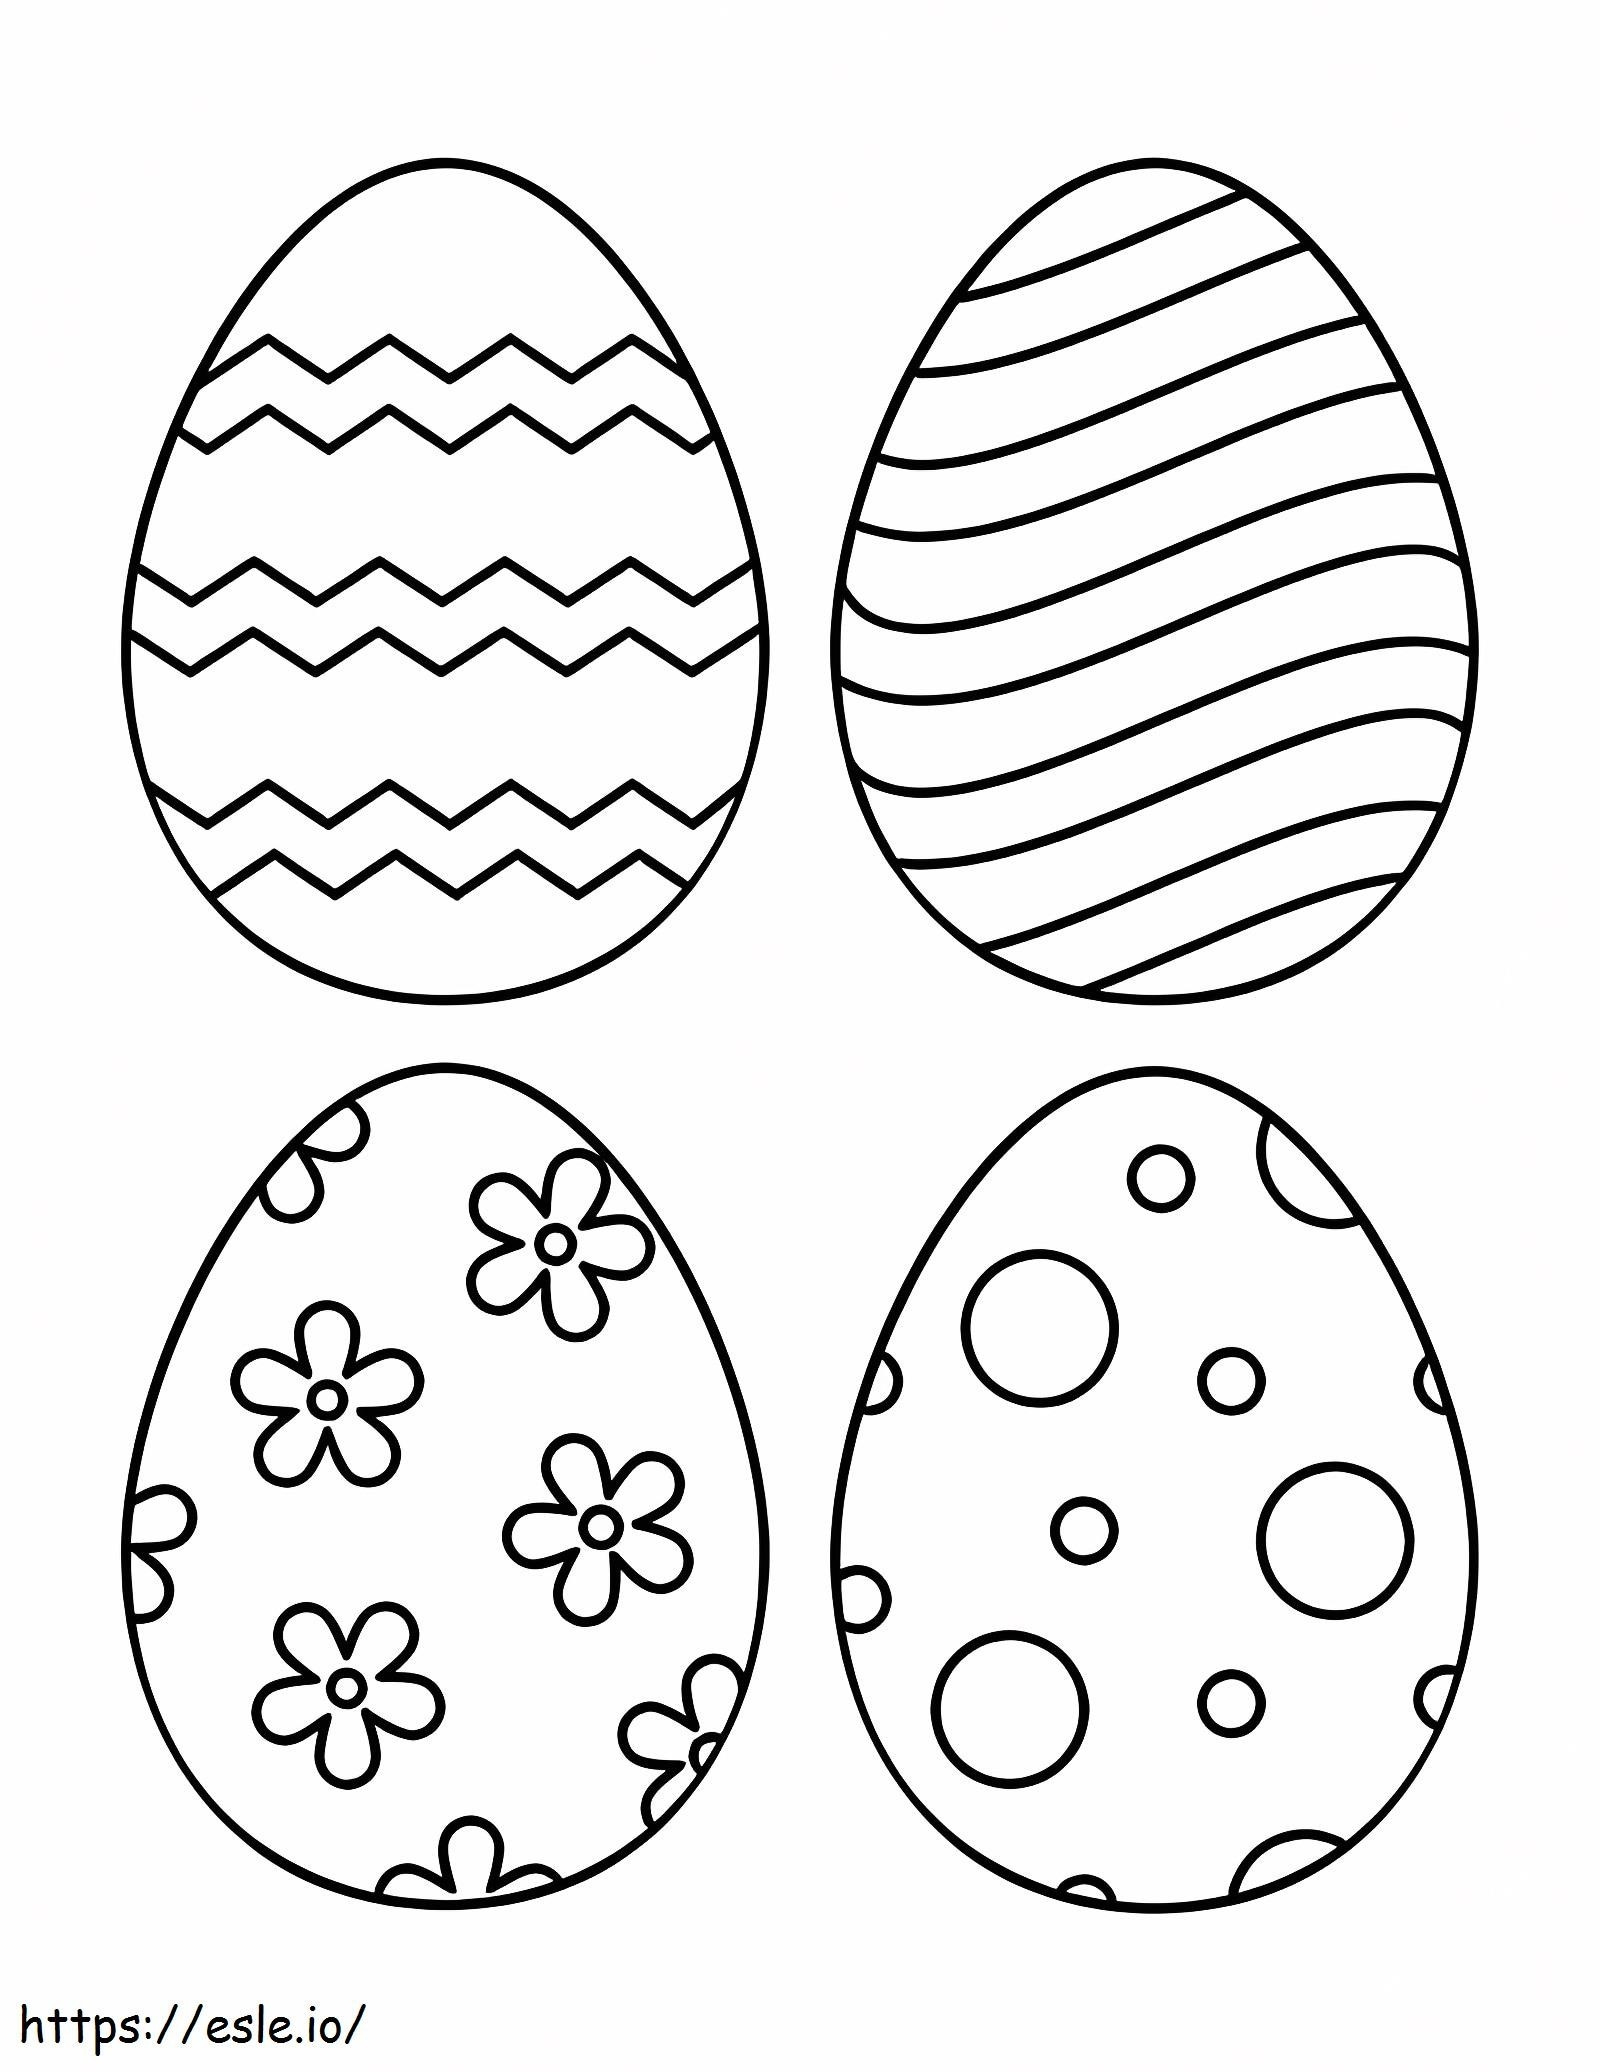 Cuatro huevos de Pascua 1 para colorear